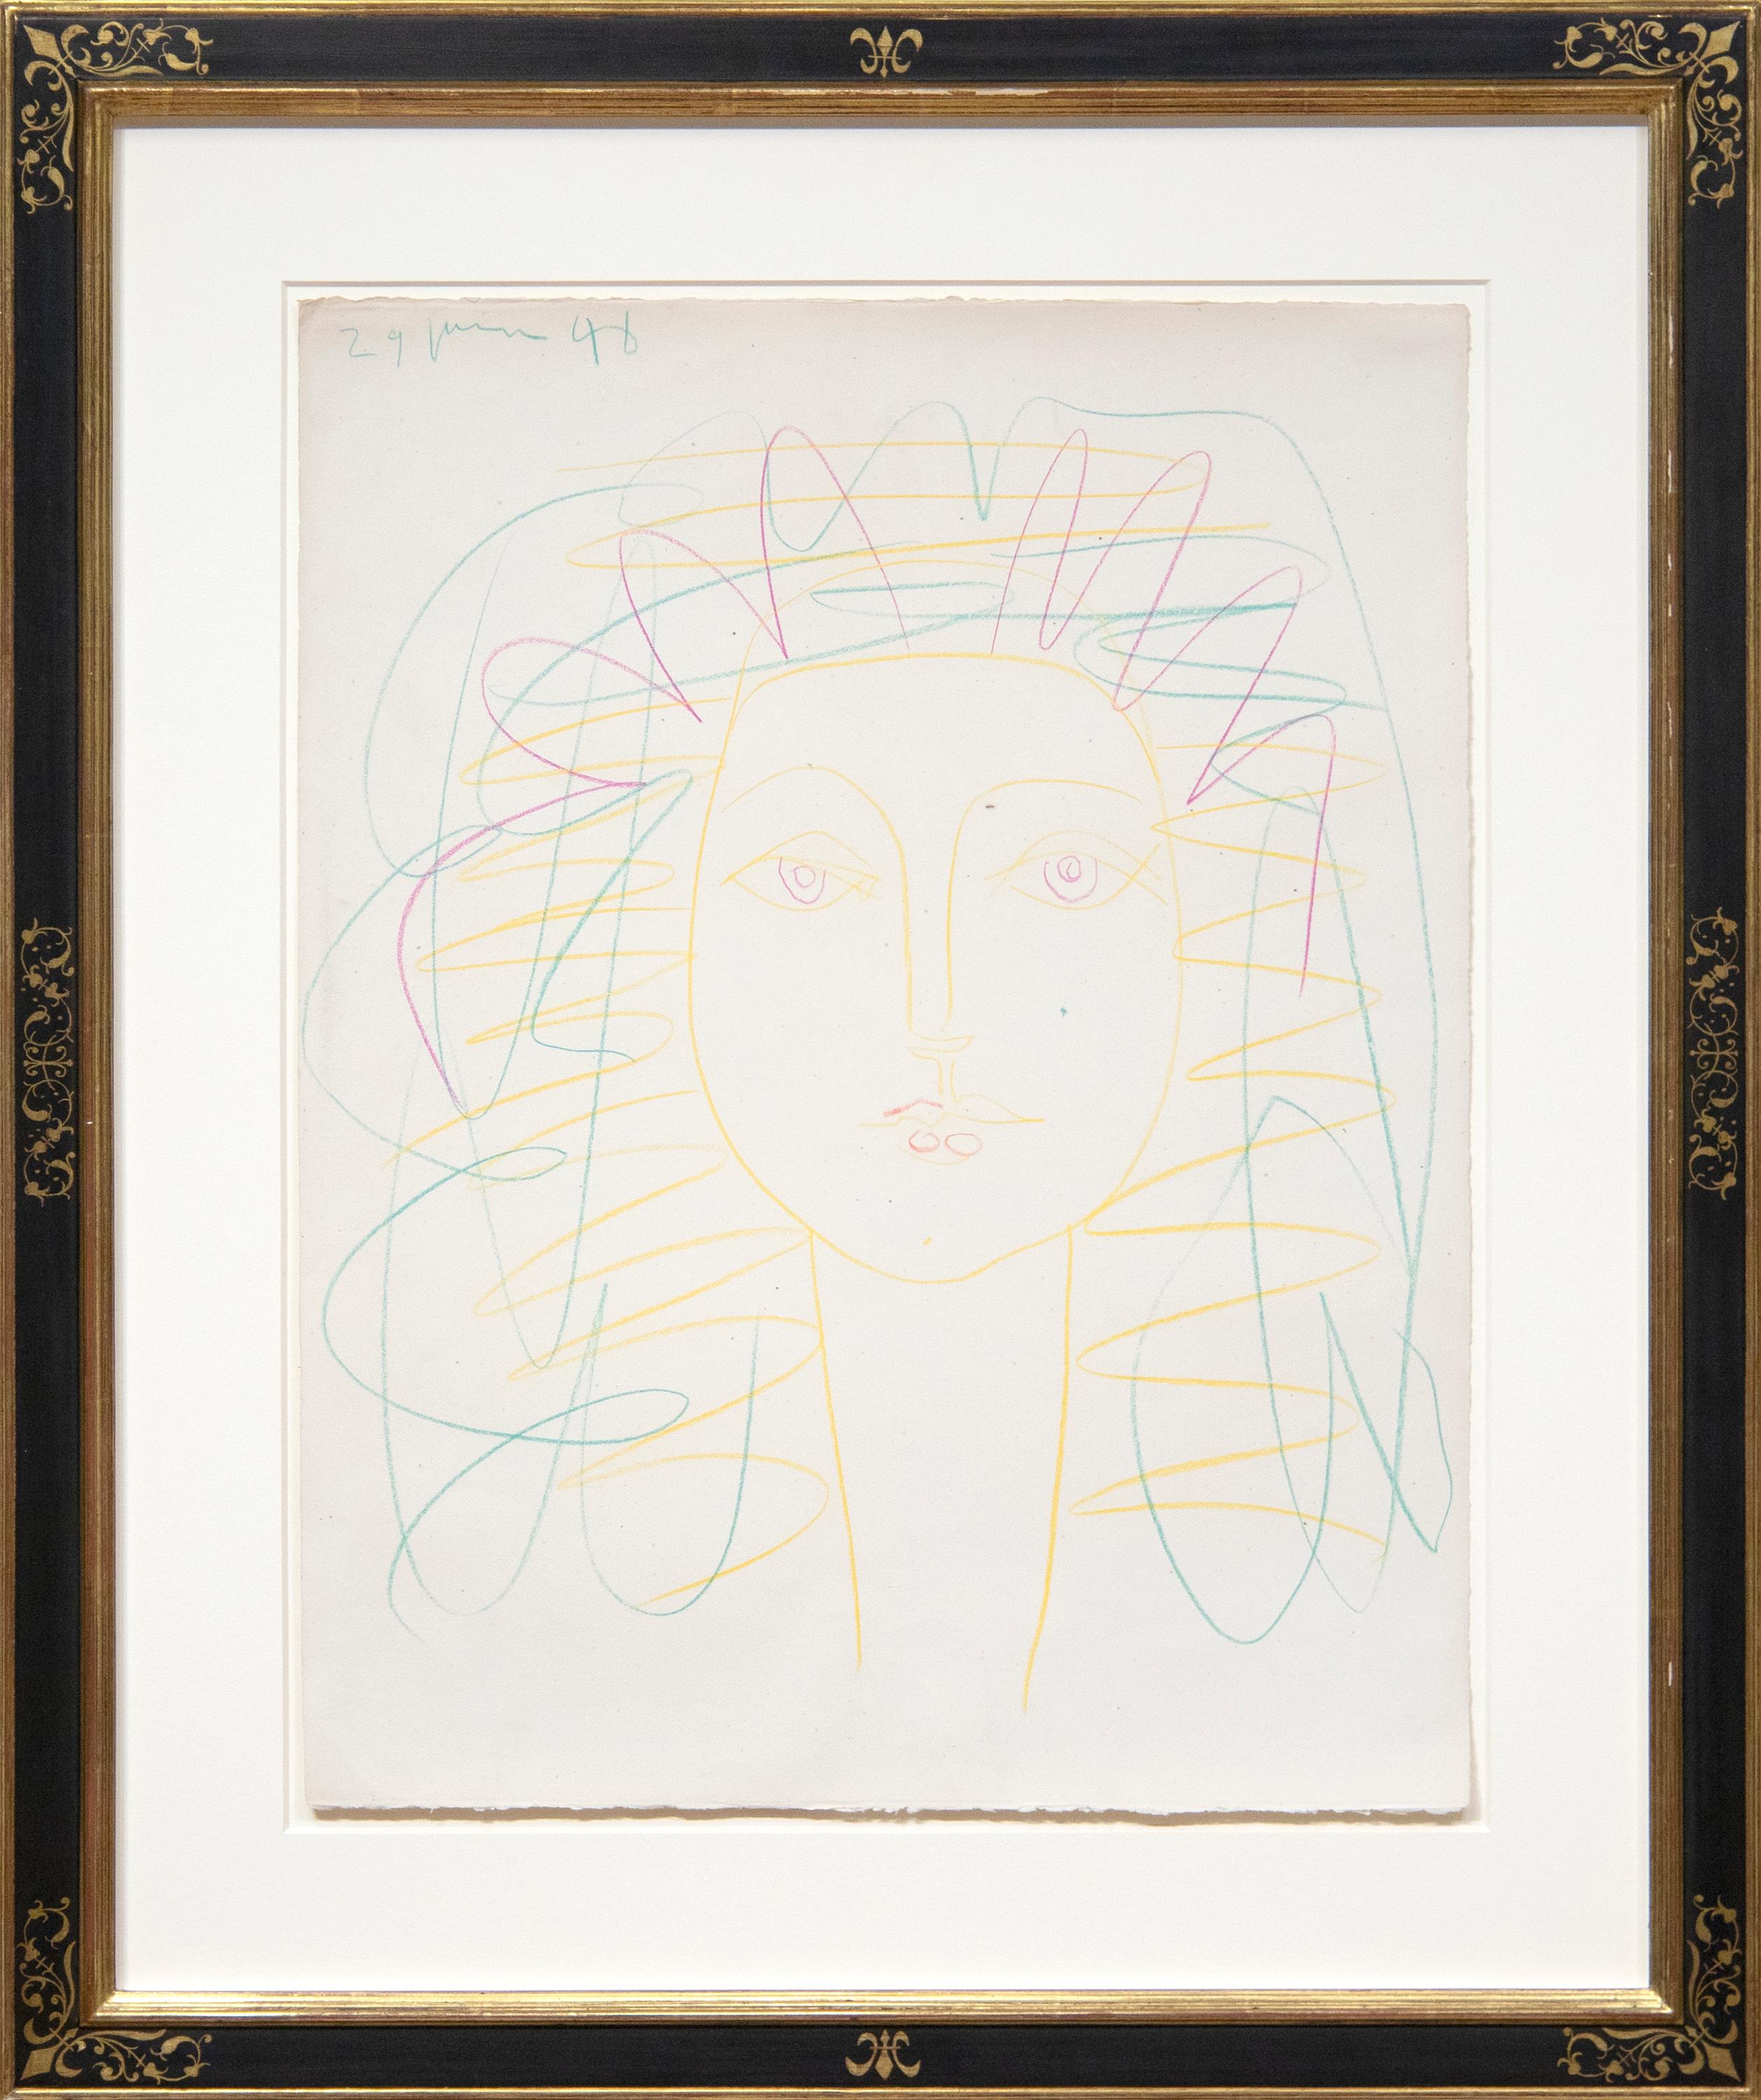 Portrait de femme (Françoise) (Portrait of Woman) - Art by Pablo Picasso